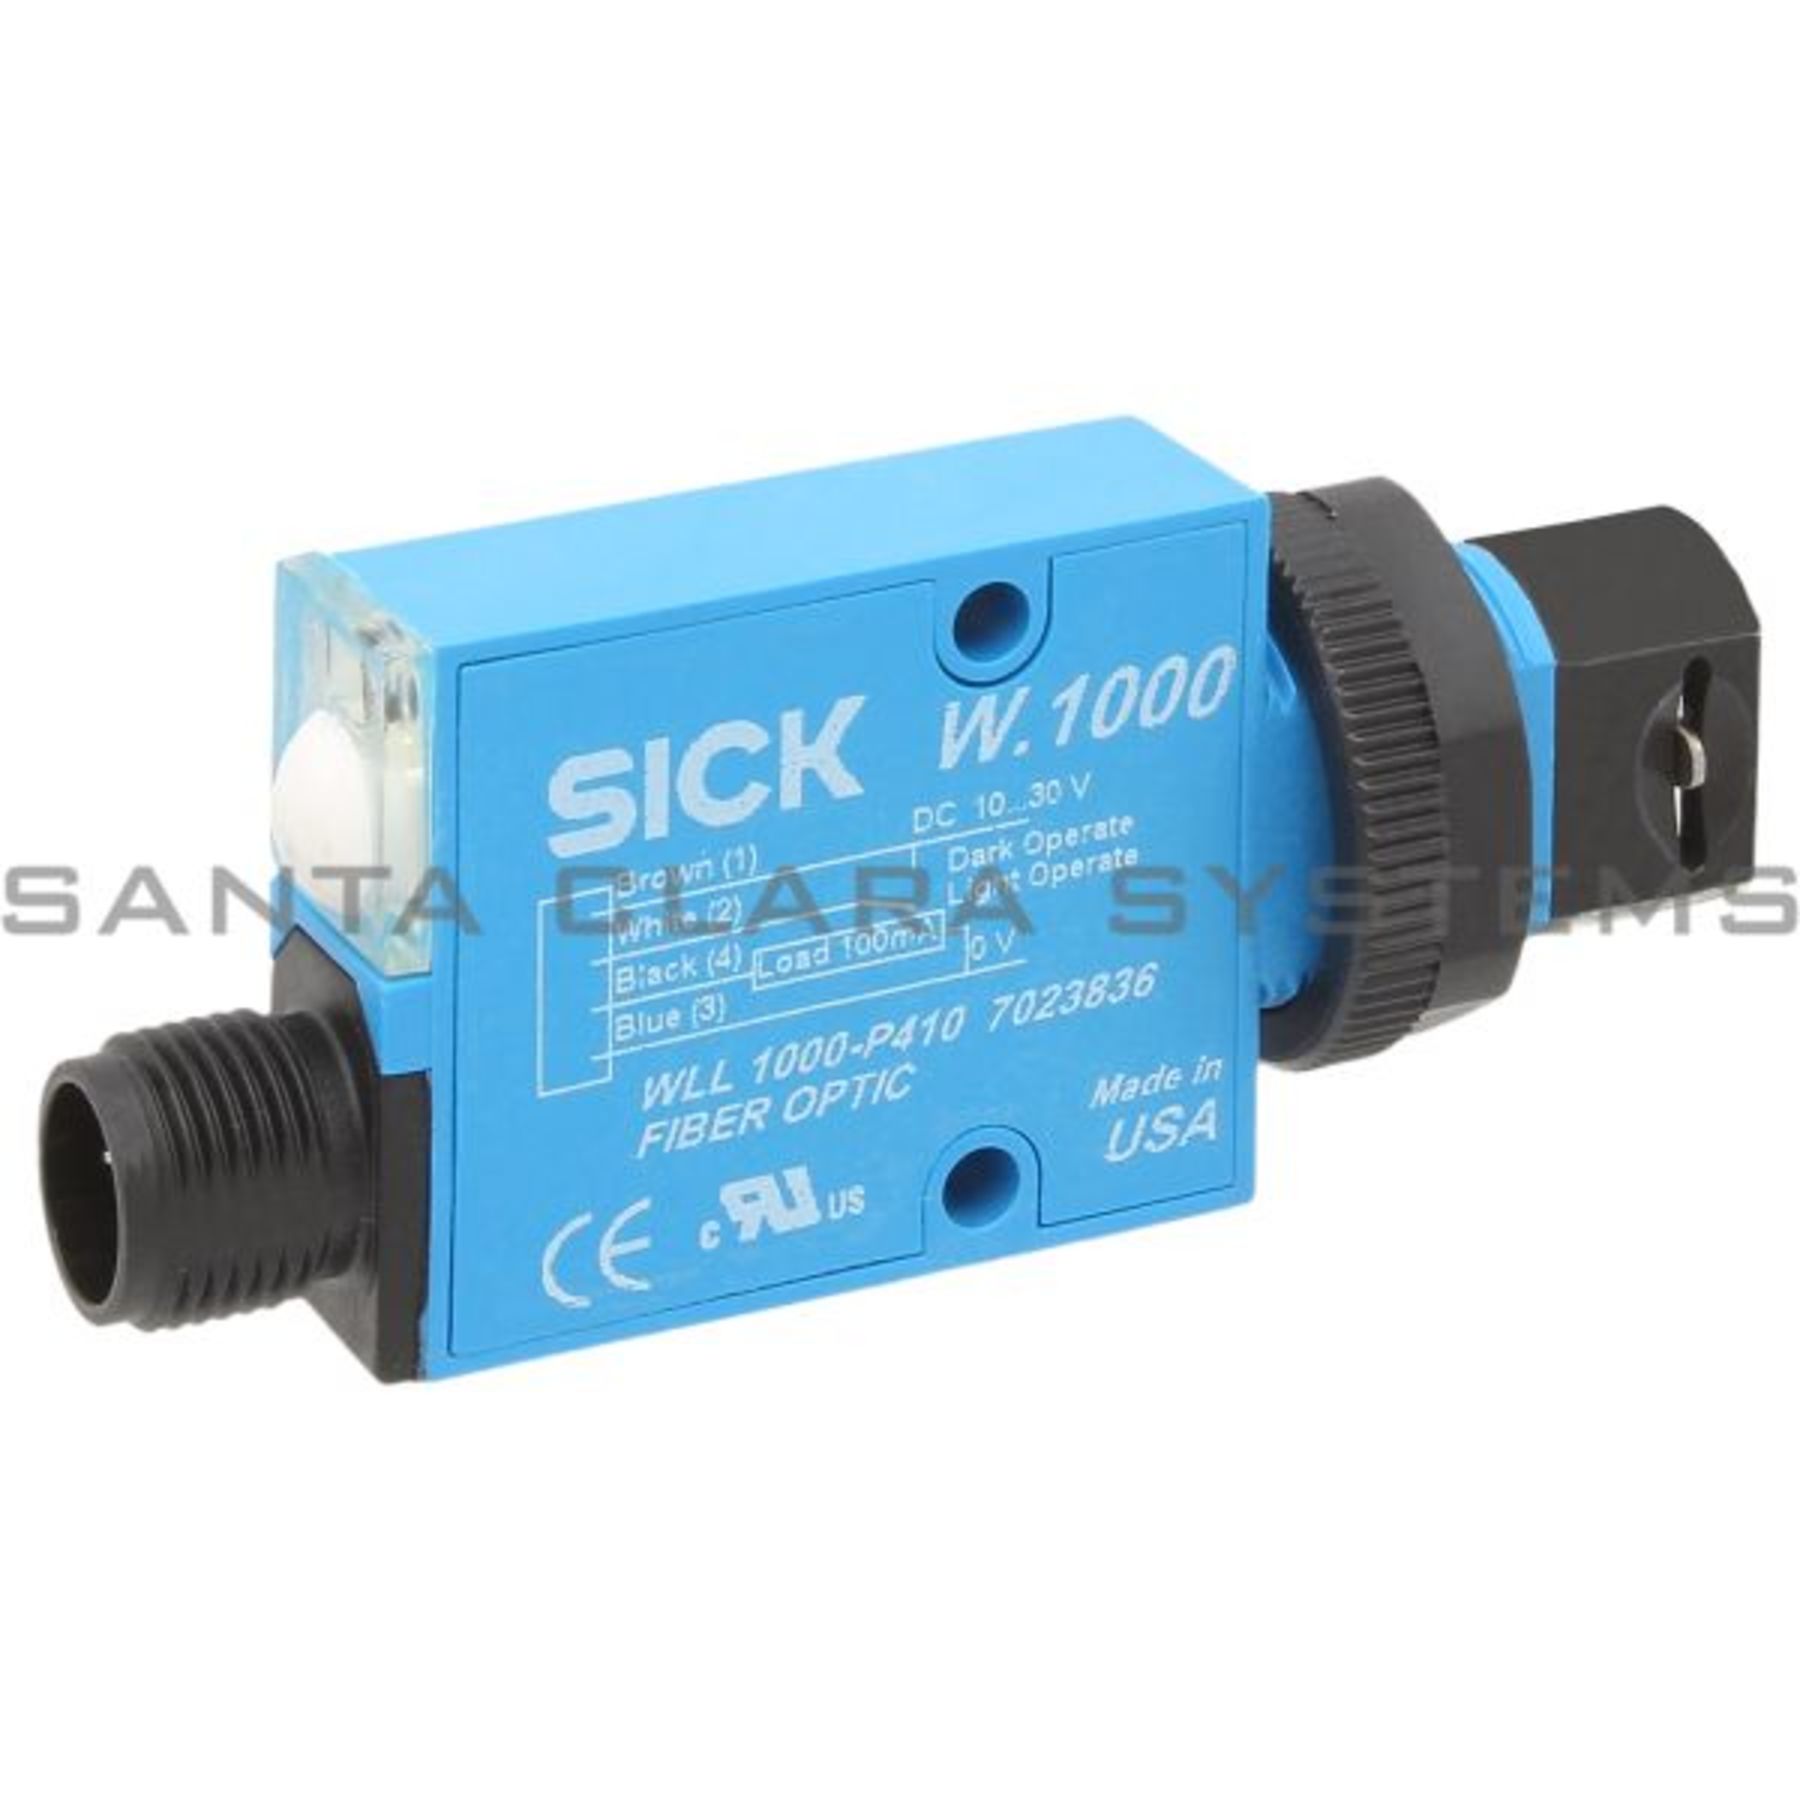 WLL1000-P410 Sick Fiber-Optic Sensor | 7023836 - Santa Clara Systems